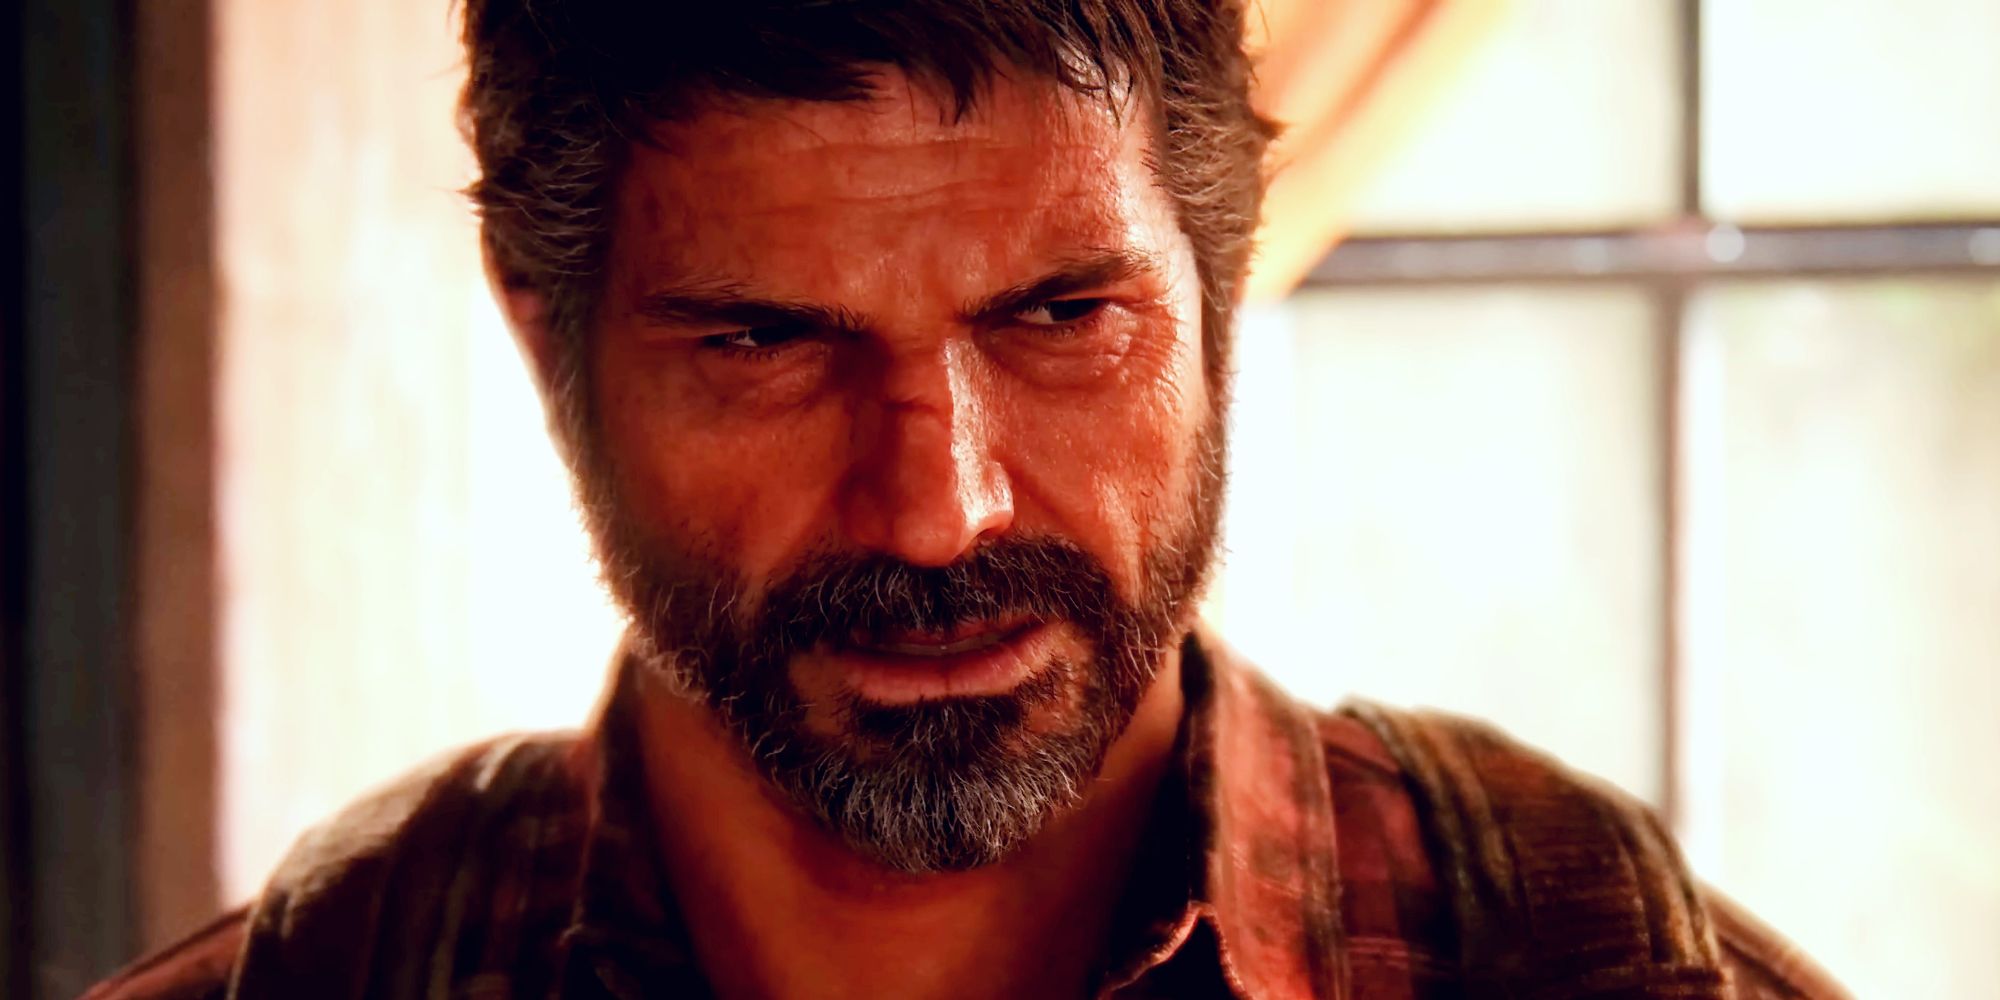 Acéptalo, nunca podrás volver a jugar The Last Of Us en modo multijugador